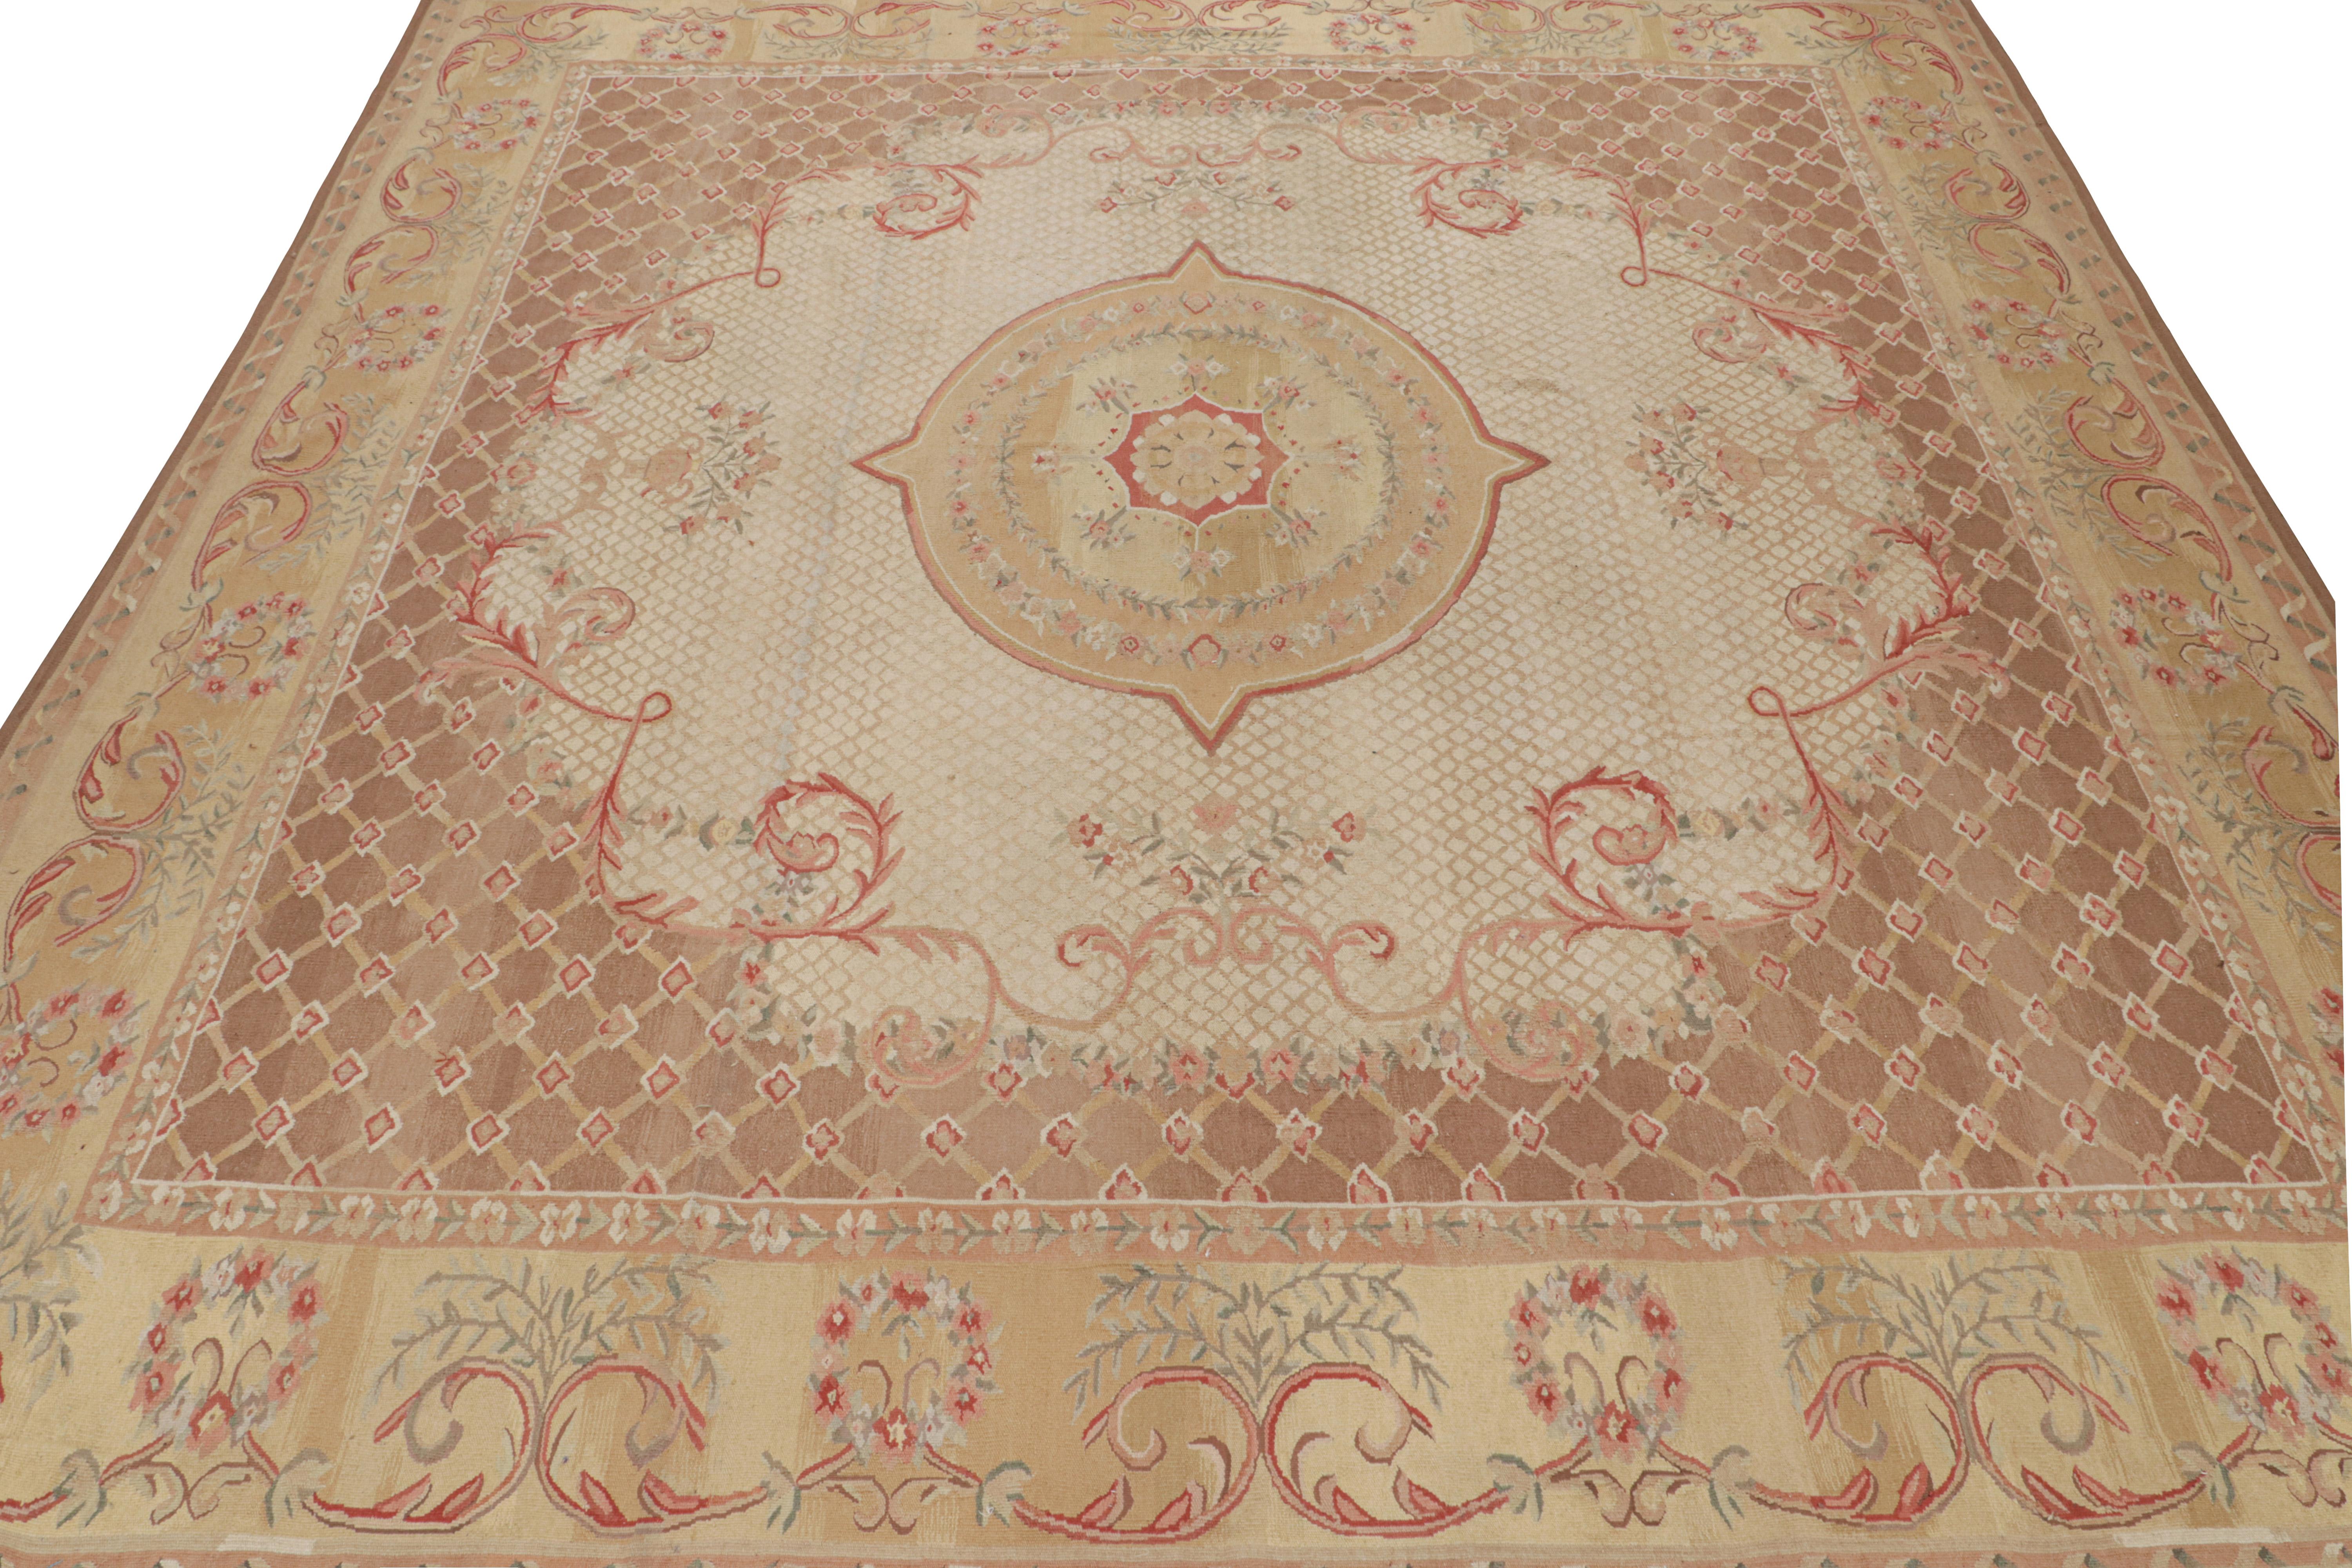 A 4x22  Extra langes Läufer-Mustertuch, inspiriert von Sultanabad-Perserteppichen - aus der Modern Classics Collection'S von Rug & Kilim. Handgeknüpft aus Wolle, ein Zusammenspiel von warmen Tönen in floralen Mustern mit klassischer Anmut.

Weiter